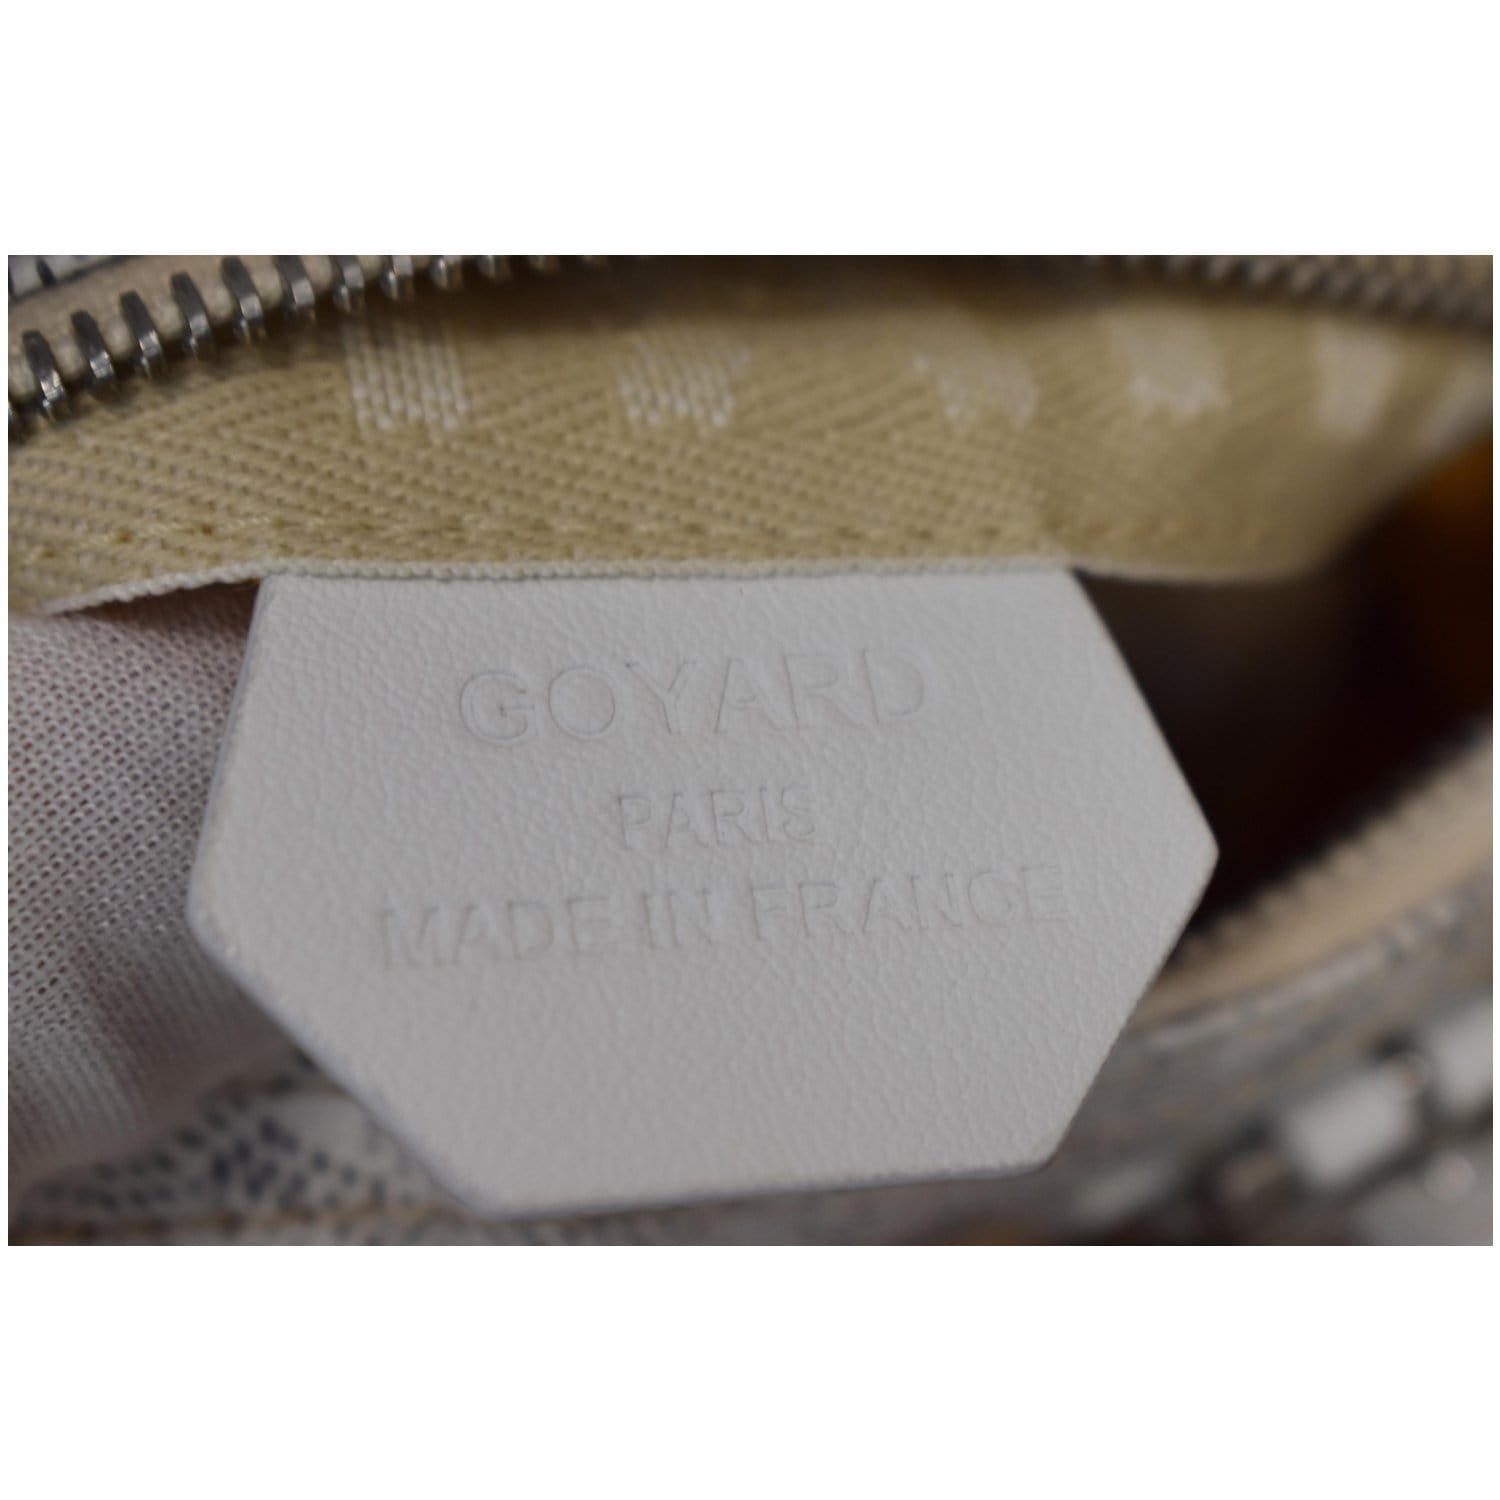 Goyard Mini Croisiere, Women's Fashion, Bags & Wallets, Cross-body